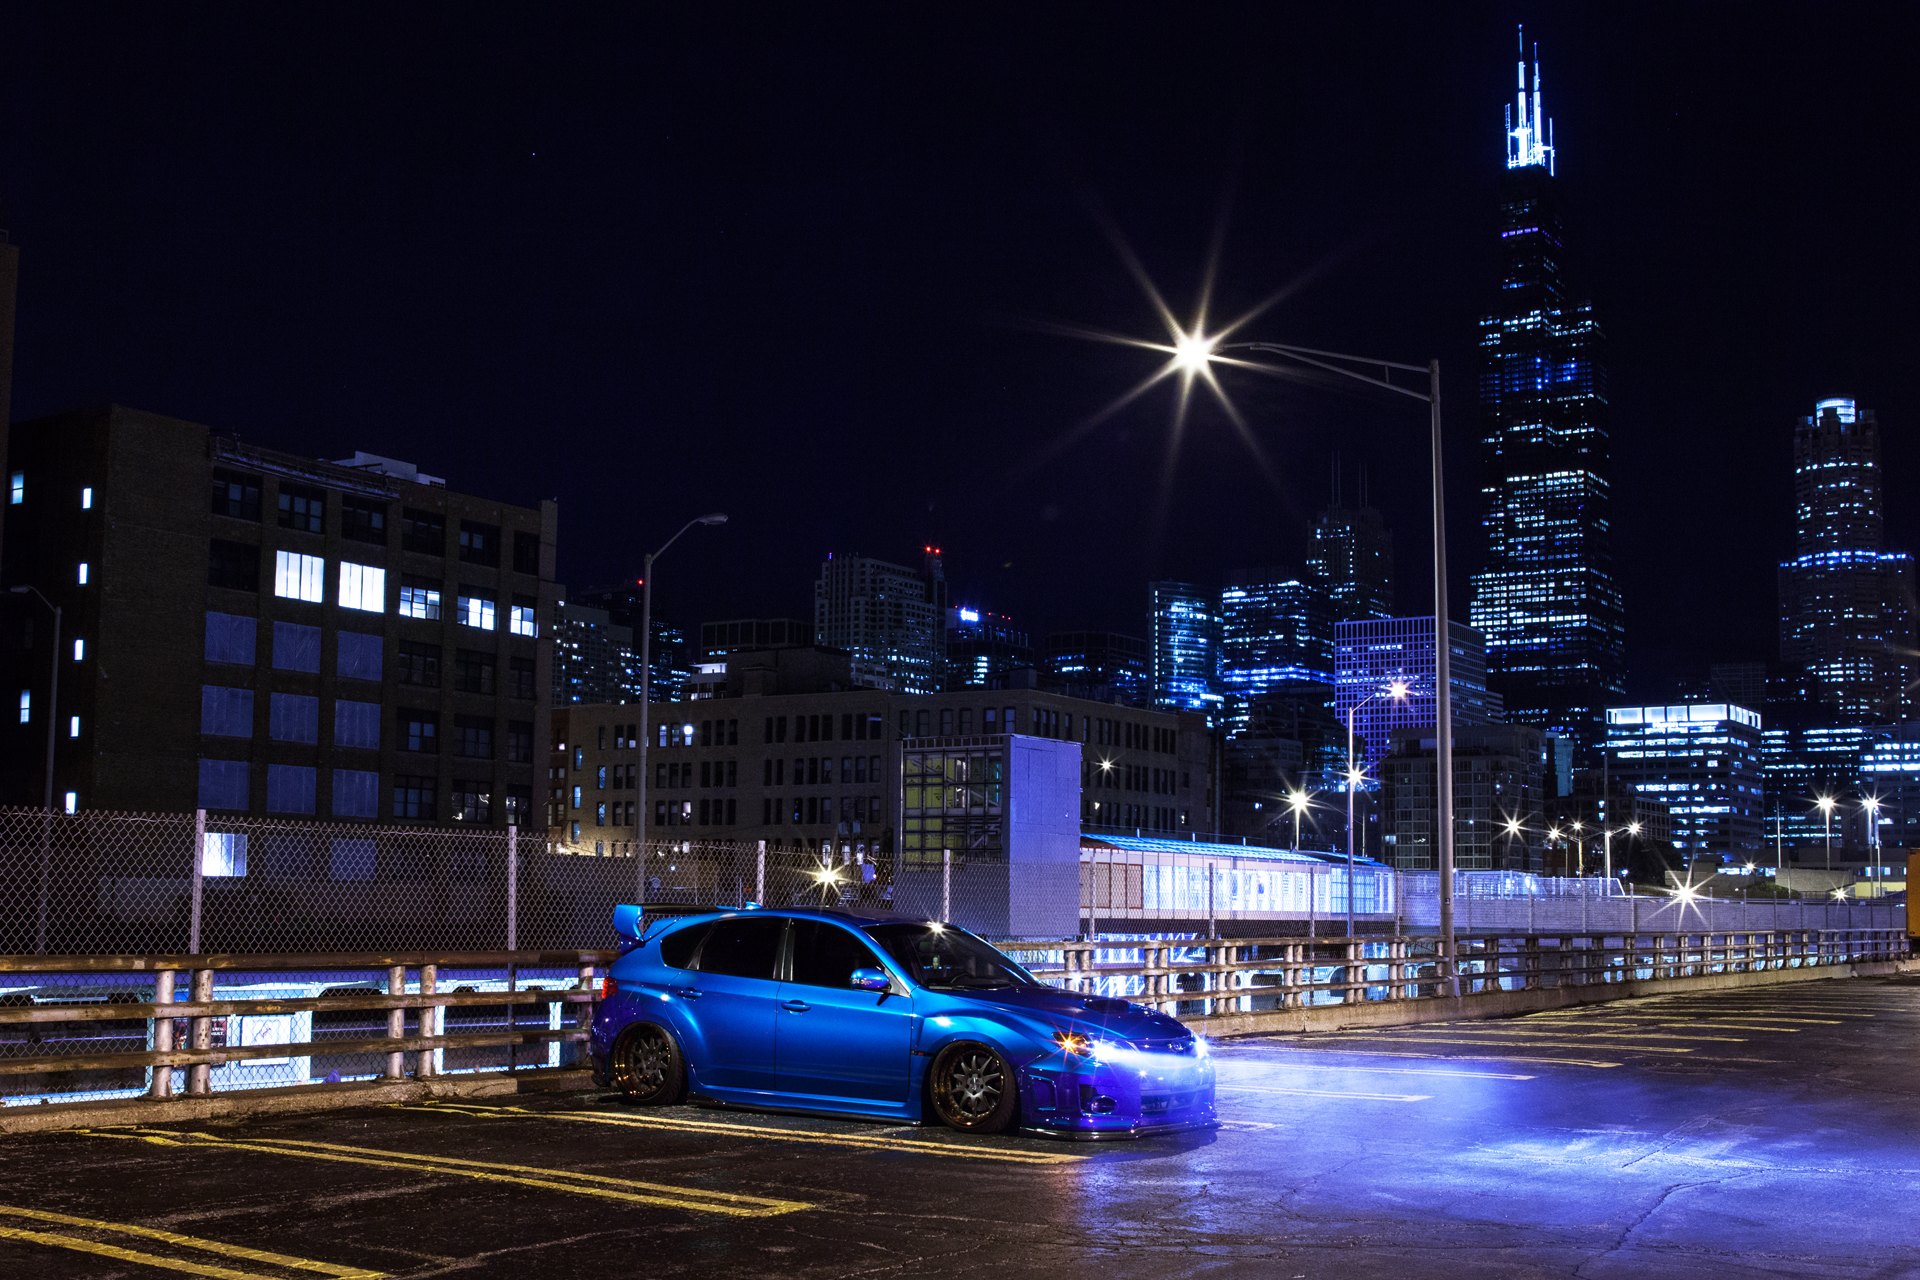 Aftermarket Projector Headlights on Blue Subaru WRX - Photo by Avant Garde Wheels